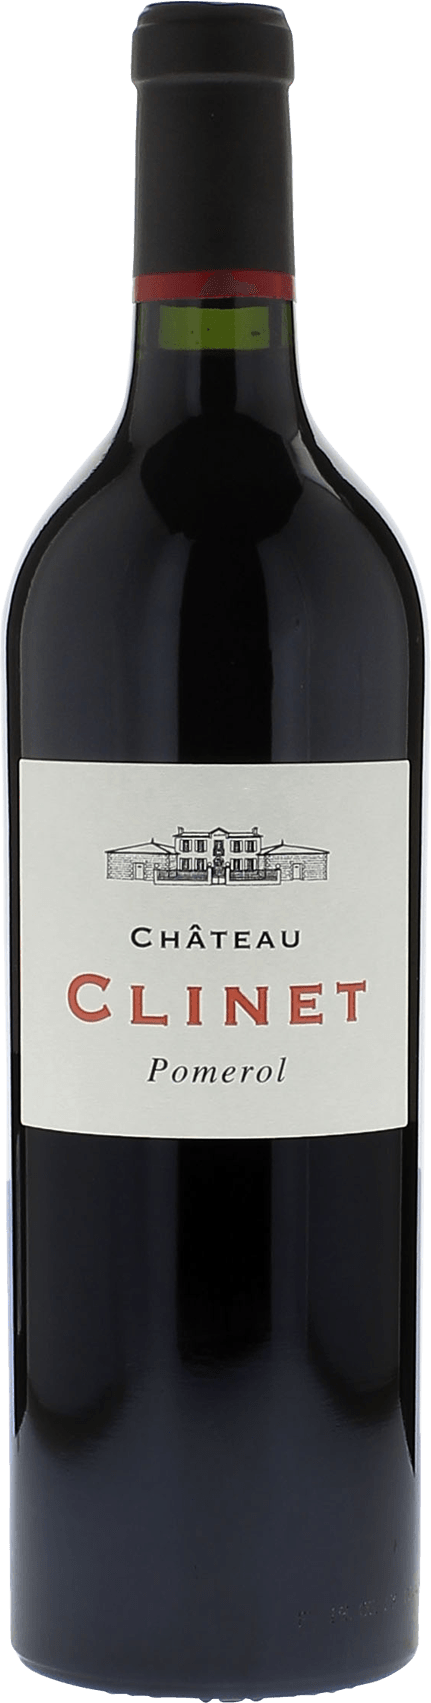 Clinet 2012  Pomerol, Bordeaux rouge